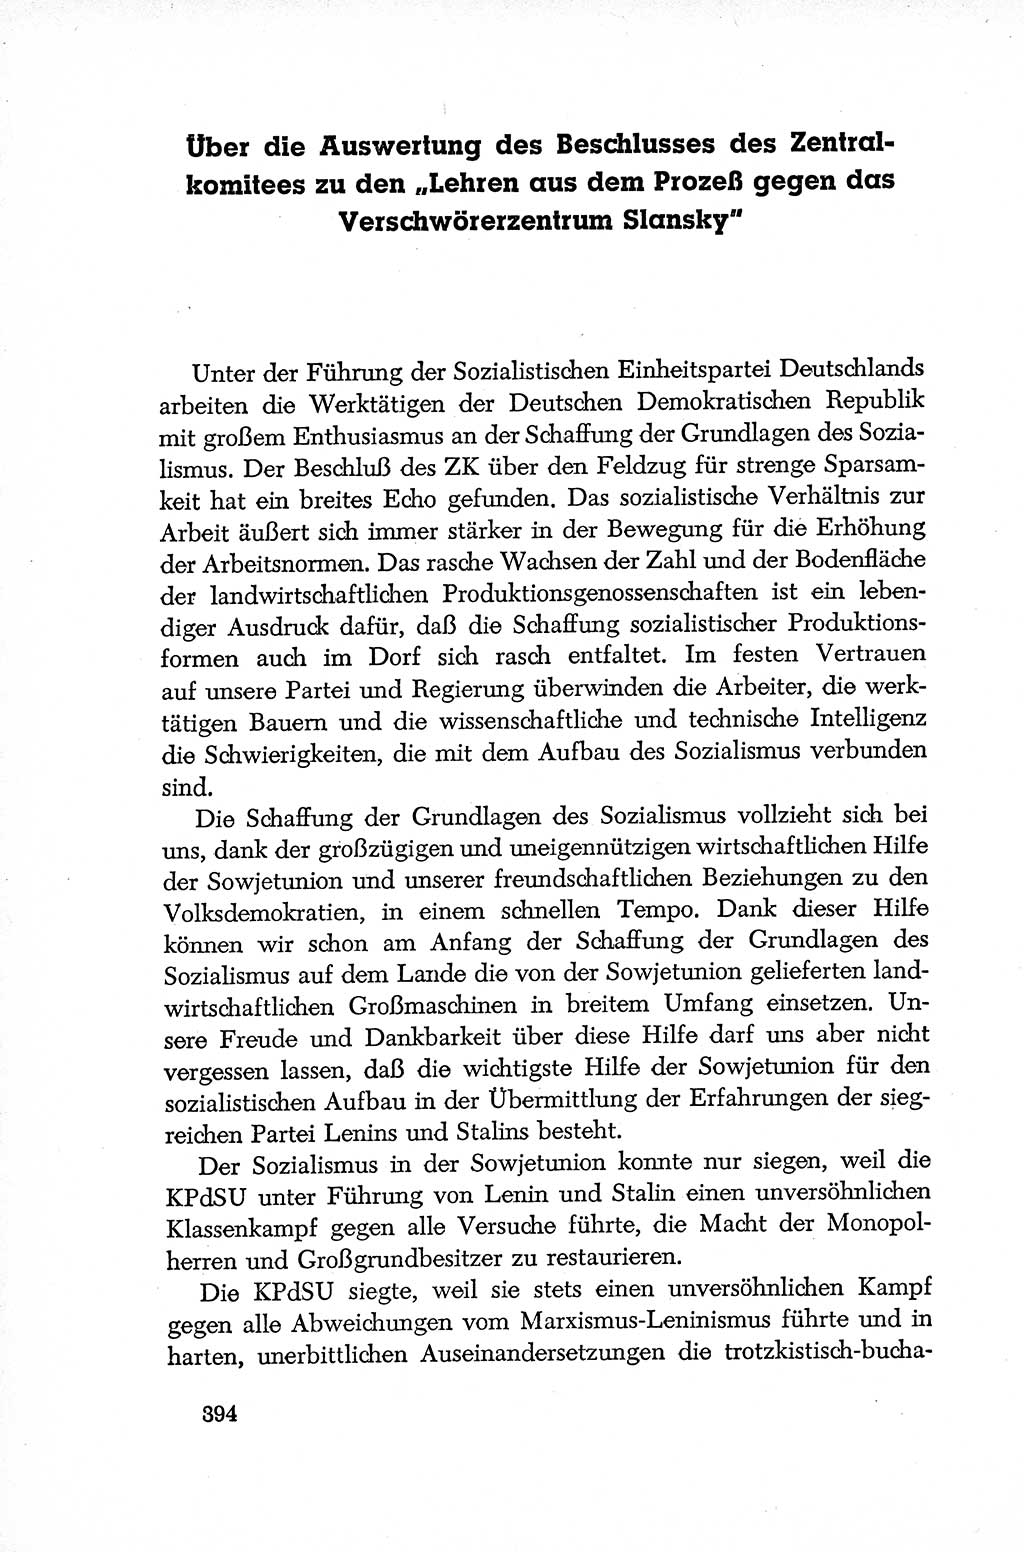 Dokumente der Sozialistischen Einheitspartei Deutschlands (SED) [Deutsche Demokratische Republik (DDR)] 1952-1953, Seite 394 (Dok. SED DDR 1952-1953, S. 394)